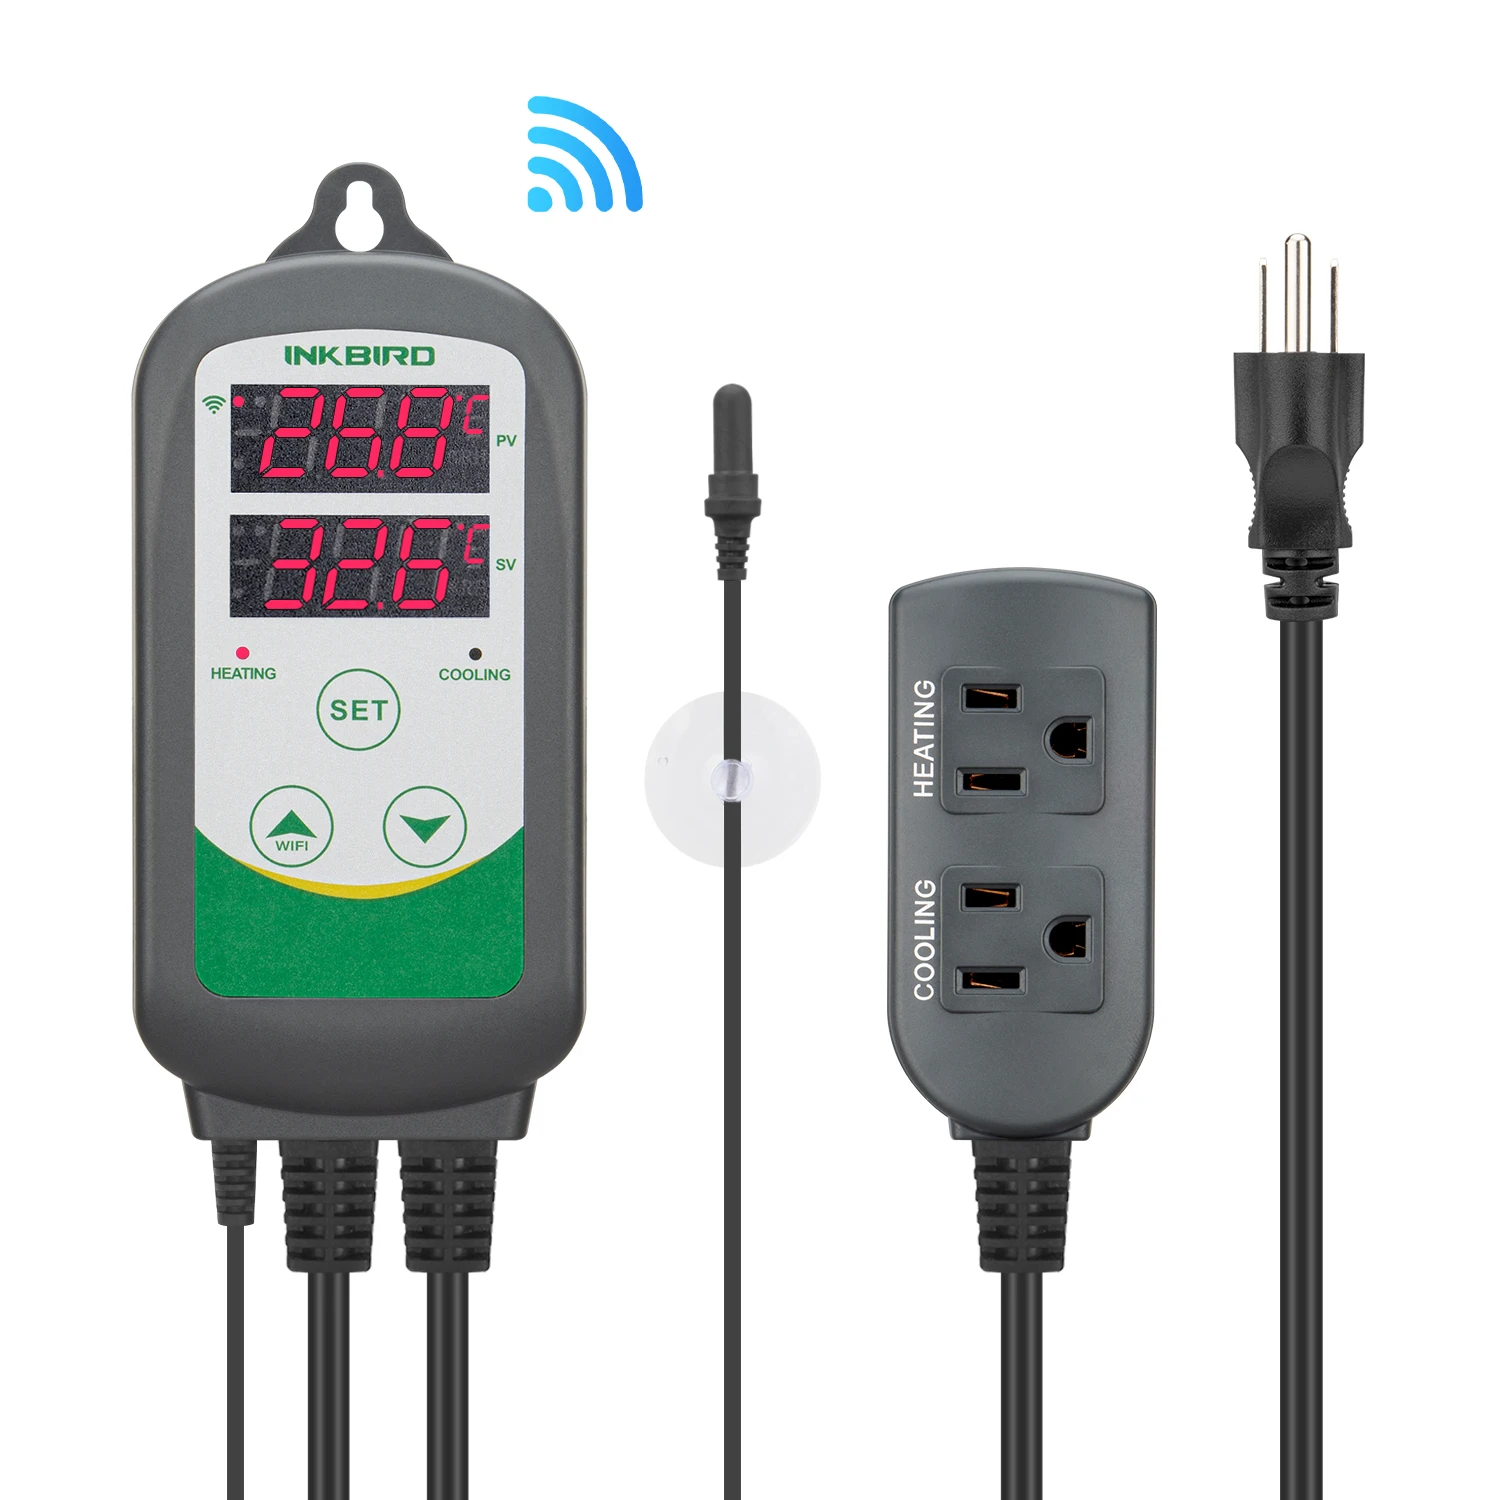 

Inkbird ITC-308 WIFI Digital Temperature Regulator Smart Home Temperature Controller Thermostat 220V Aquarium Probe fr Incubator